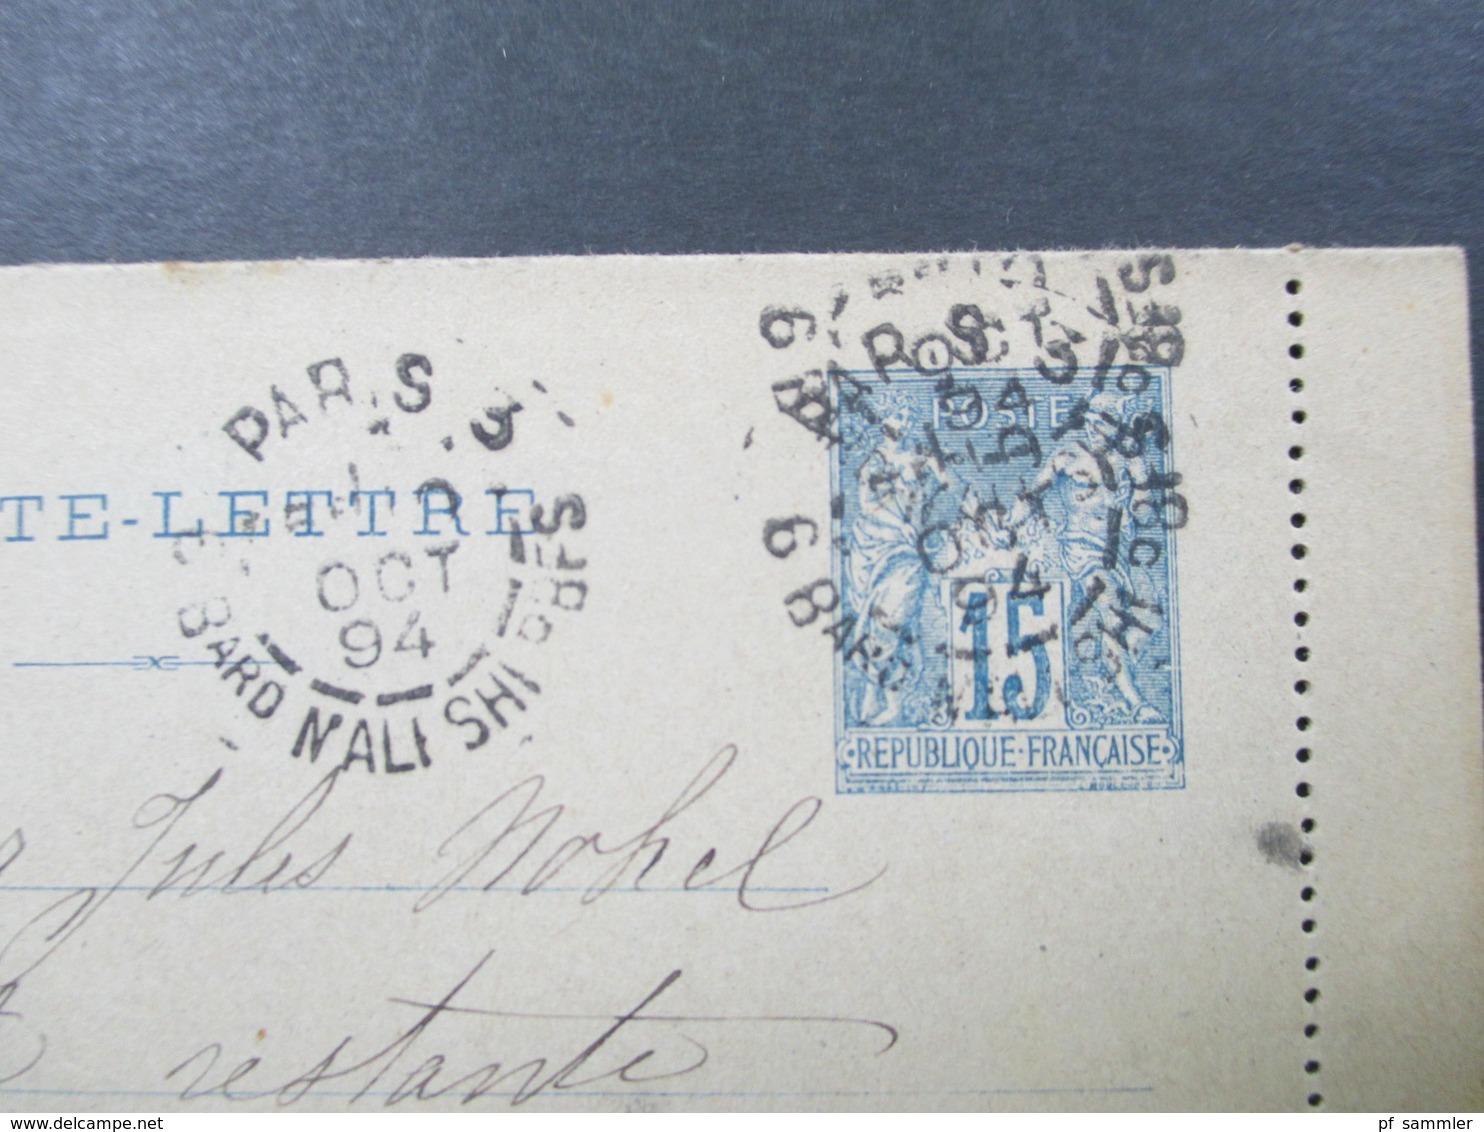 Frankreich 1894 Kartenbrief Poste Restante Ship Letter ?! Nach Tunis - Kartenbriefe